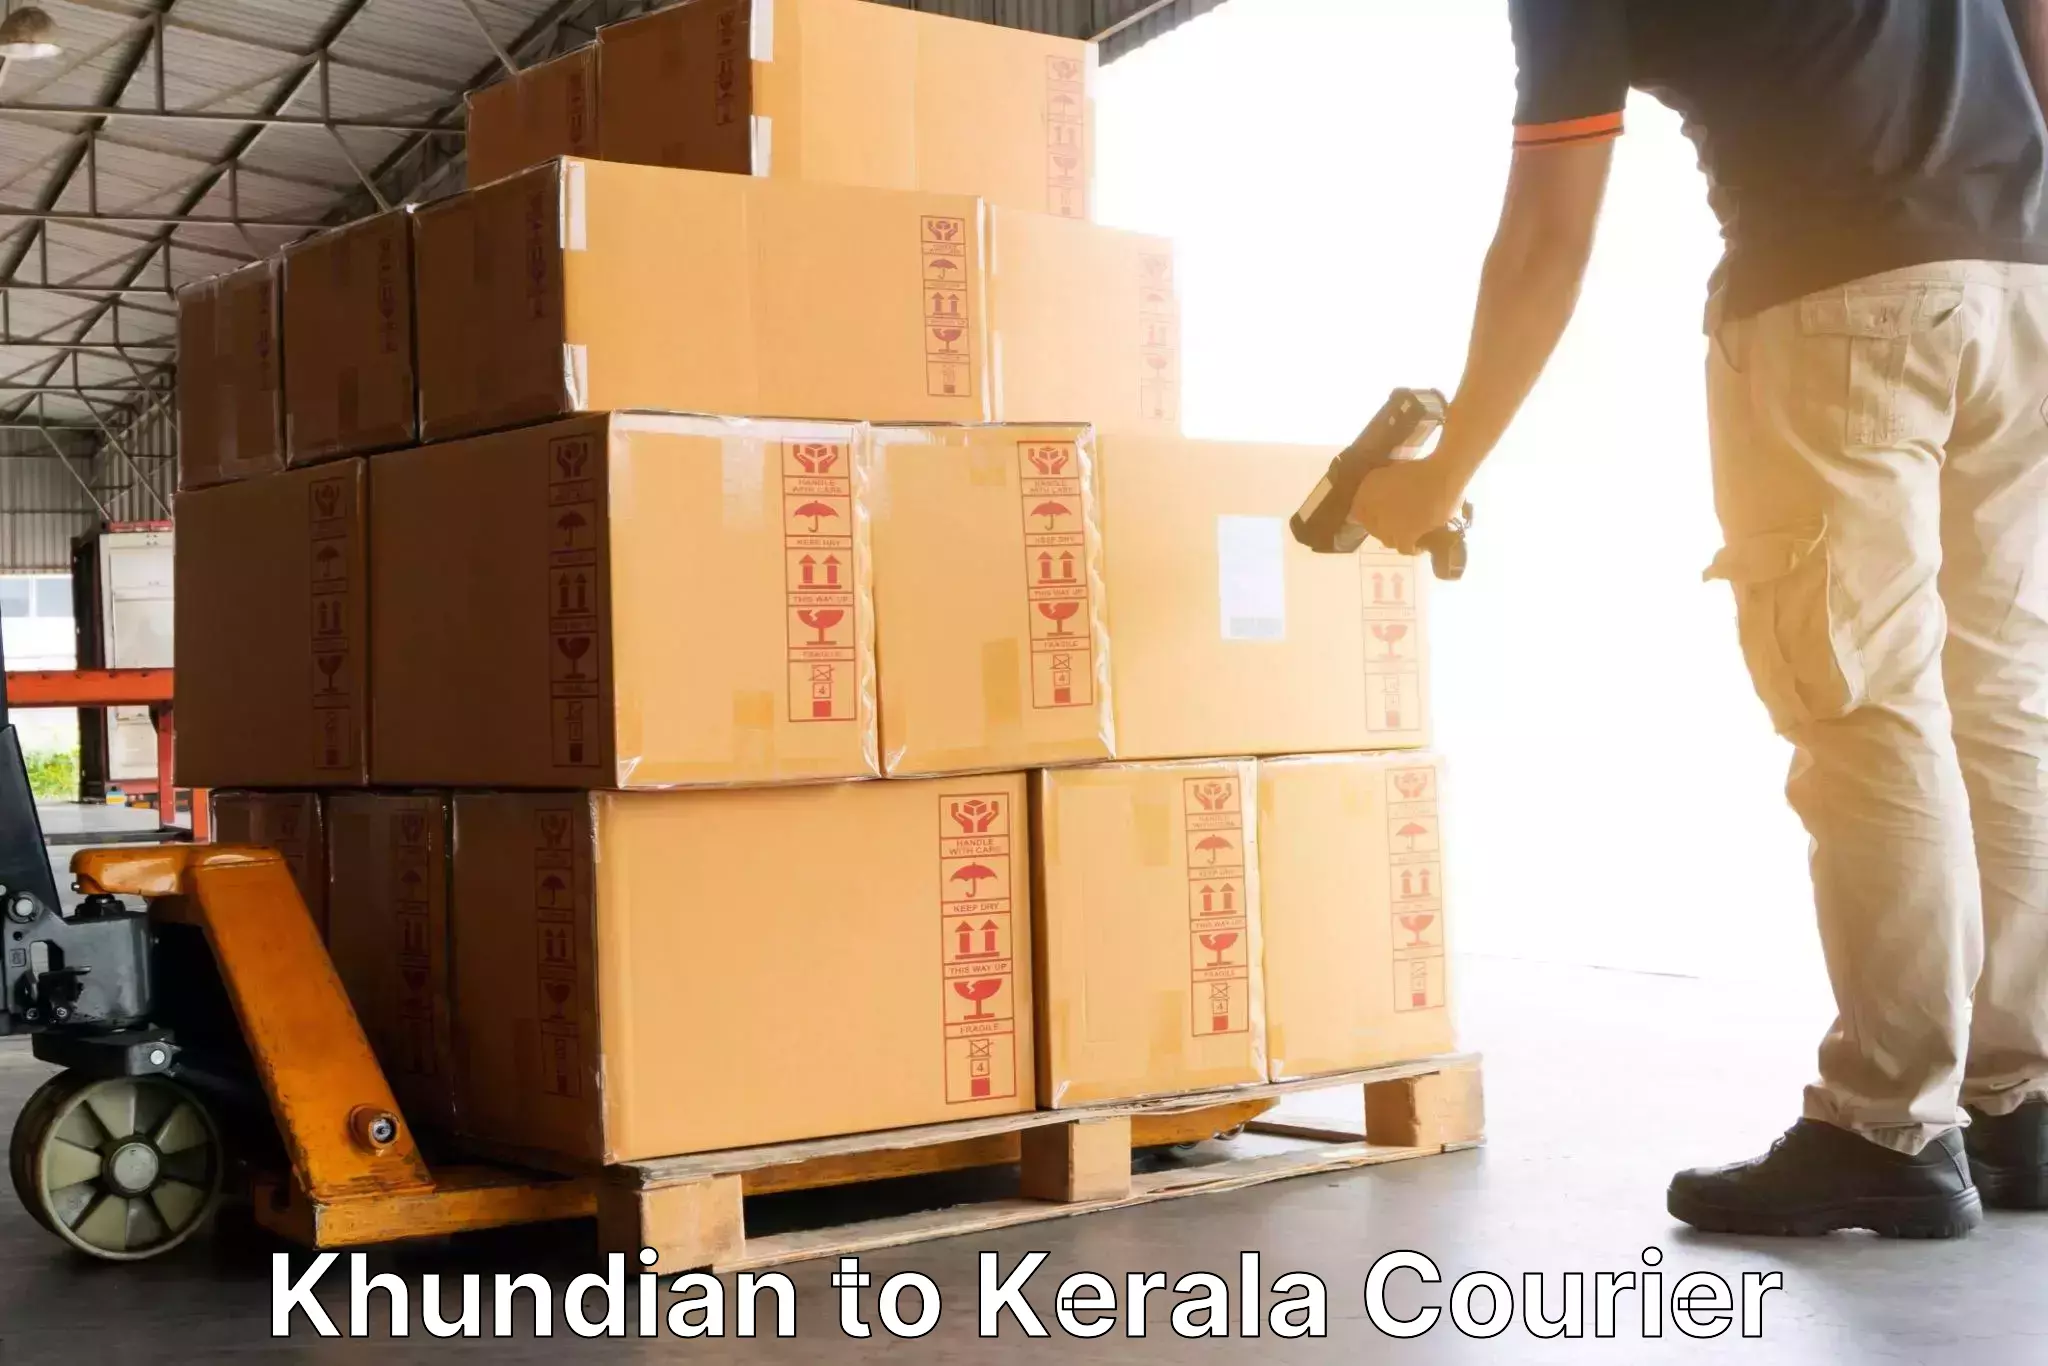 Door-to-door freight service Khundian to Kerala